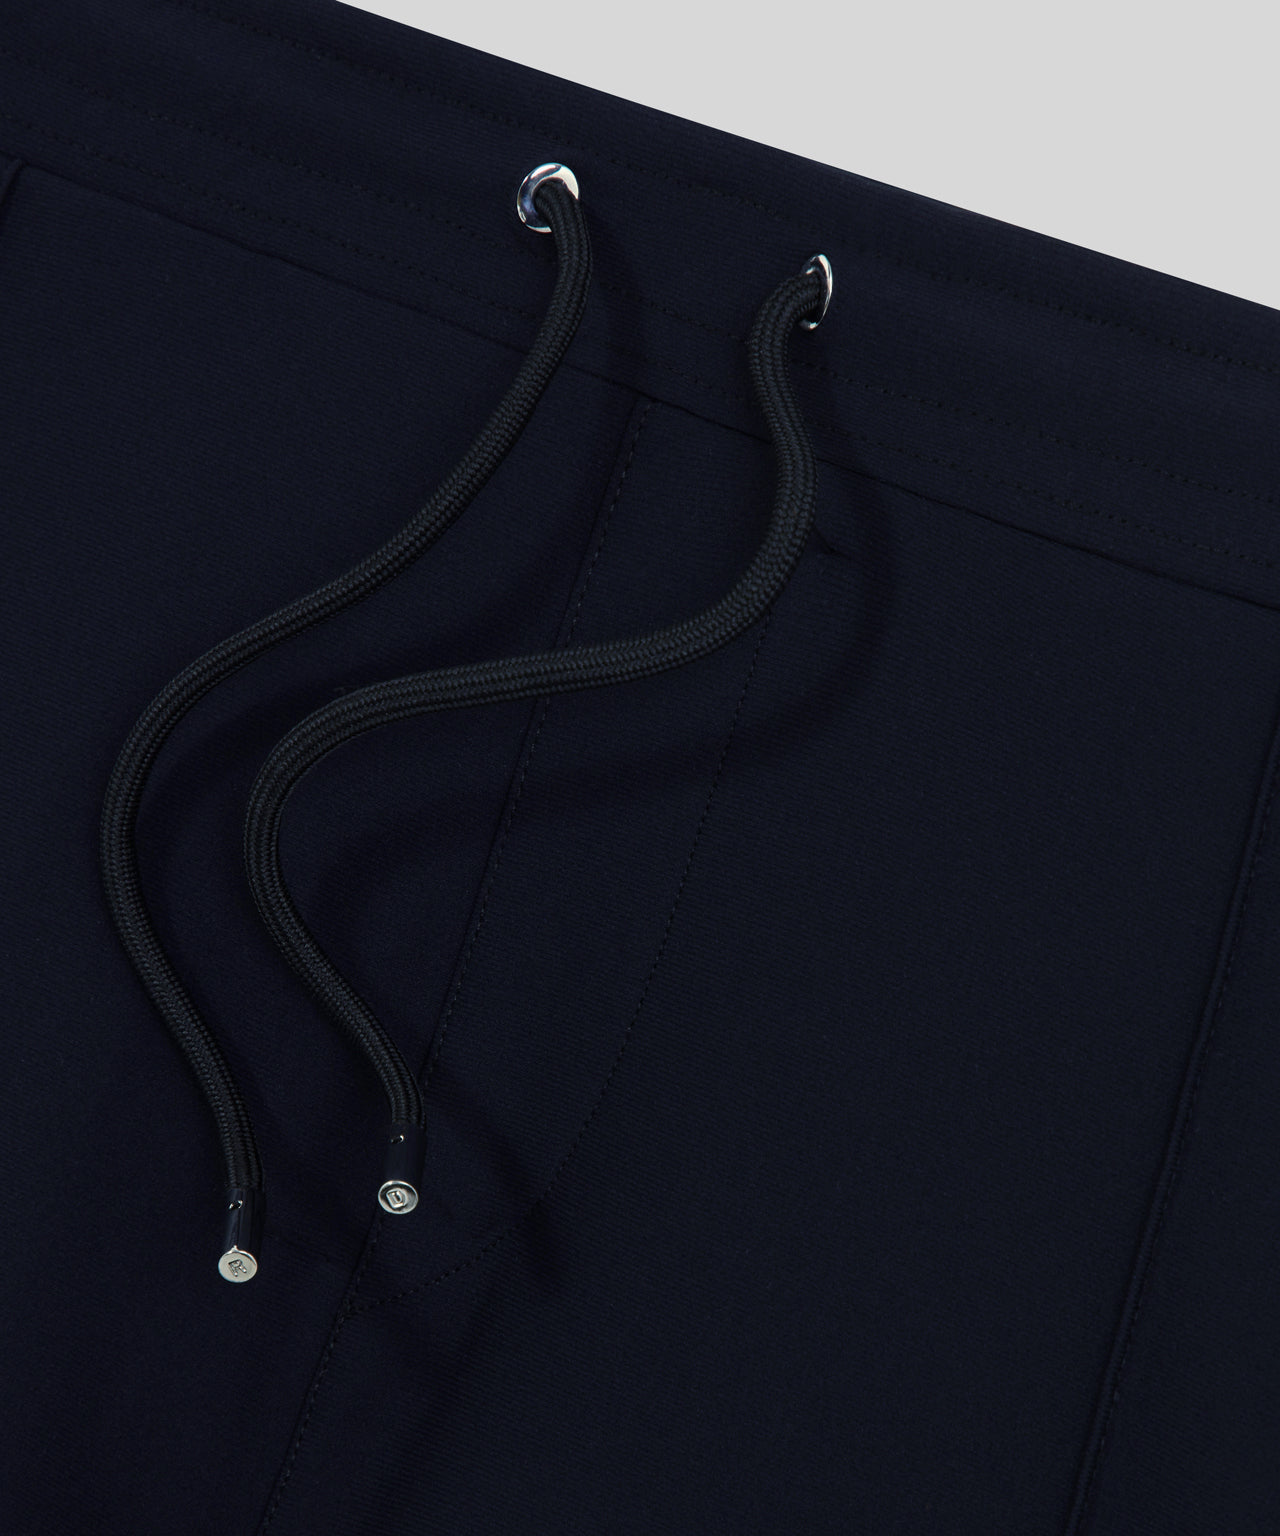 Pantalon coupe droite en tissu stretch: Bleu marine